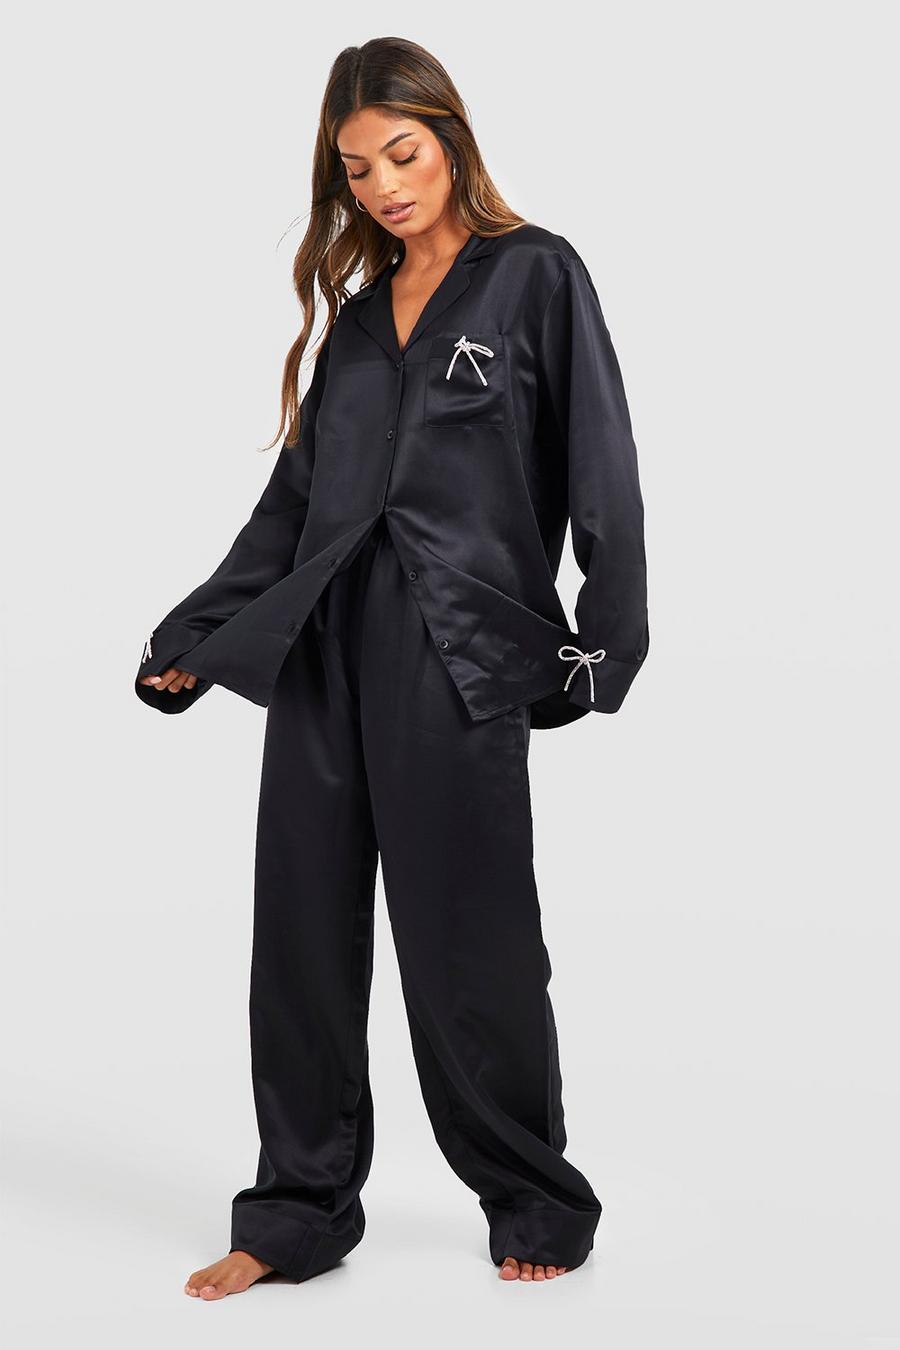 Pijama Premium de pernera ancha y camisa con lazo de incrustaciones, Black negro